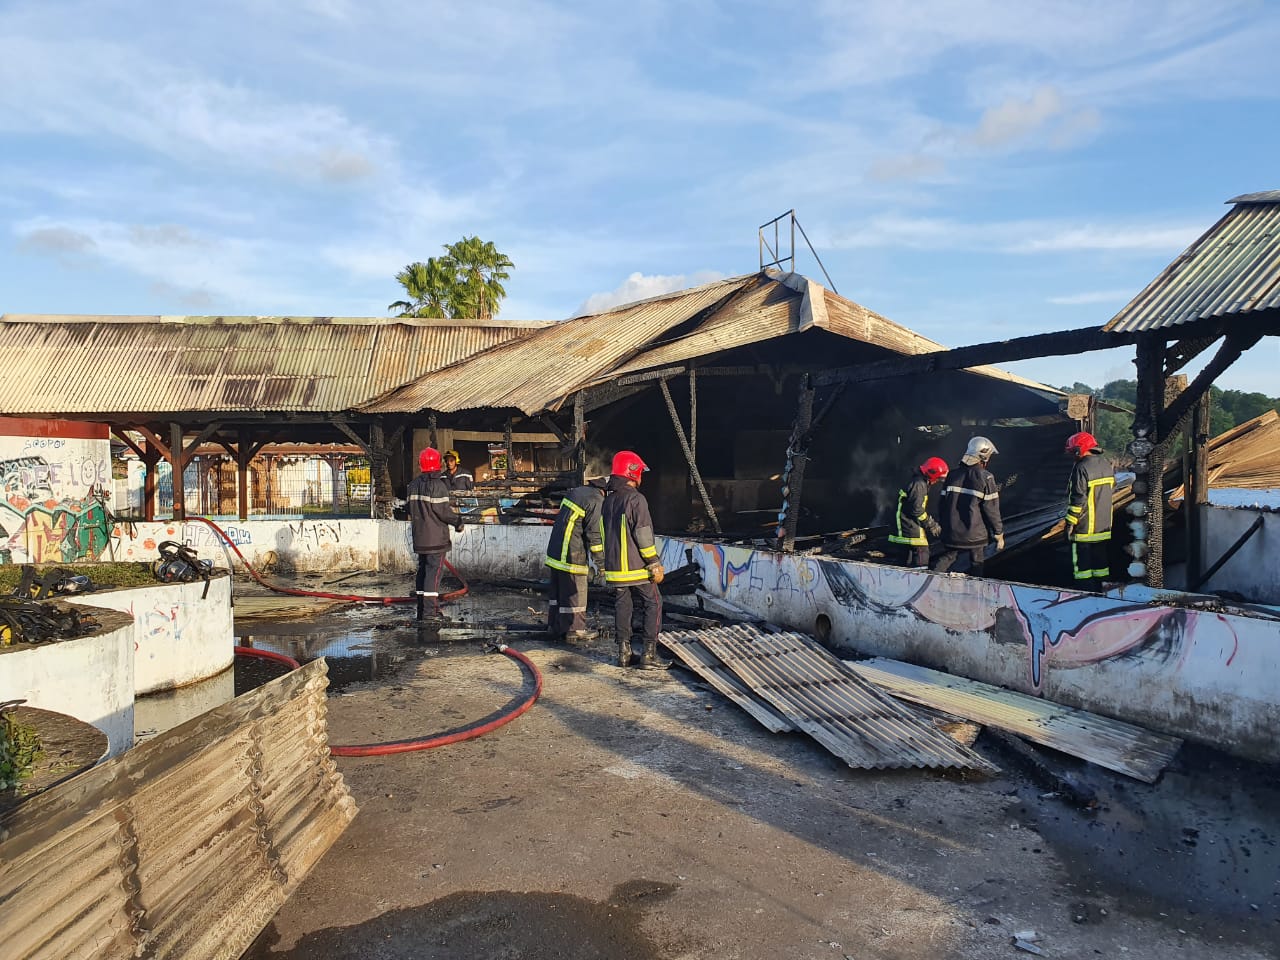     Un ex-restaurant de Schoelcher ravagé par les flammes

